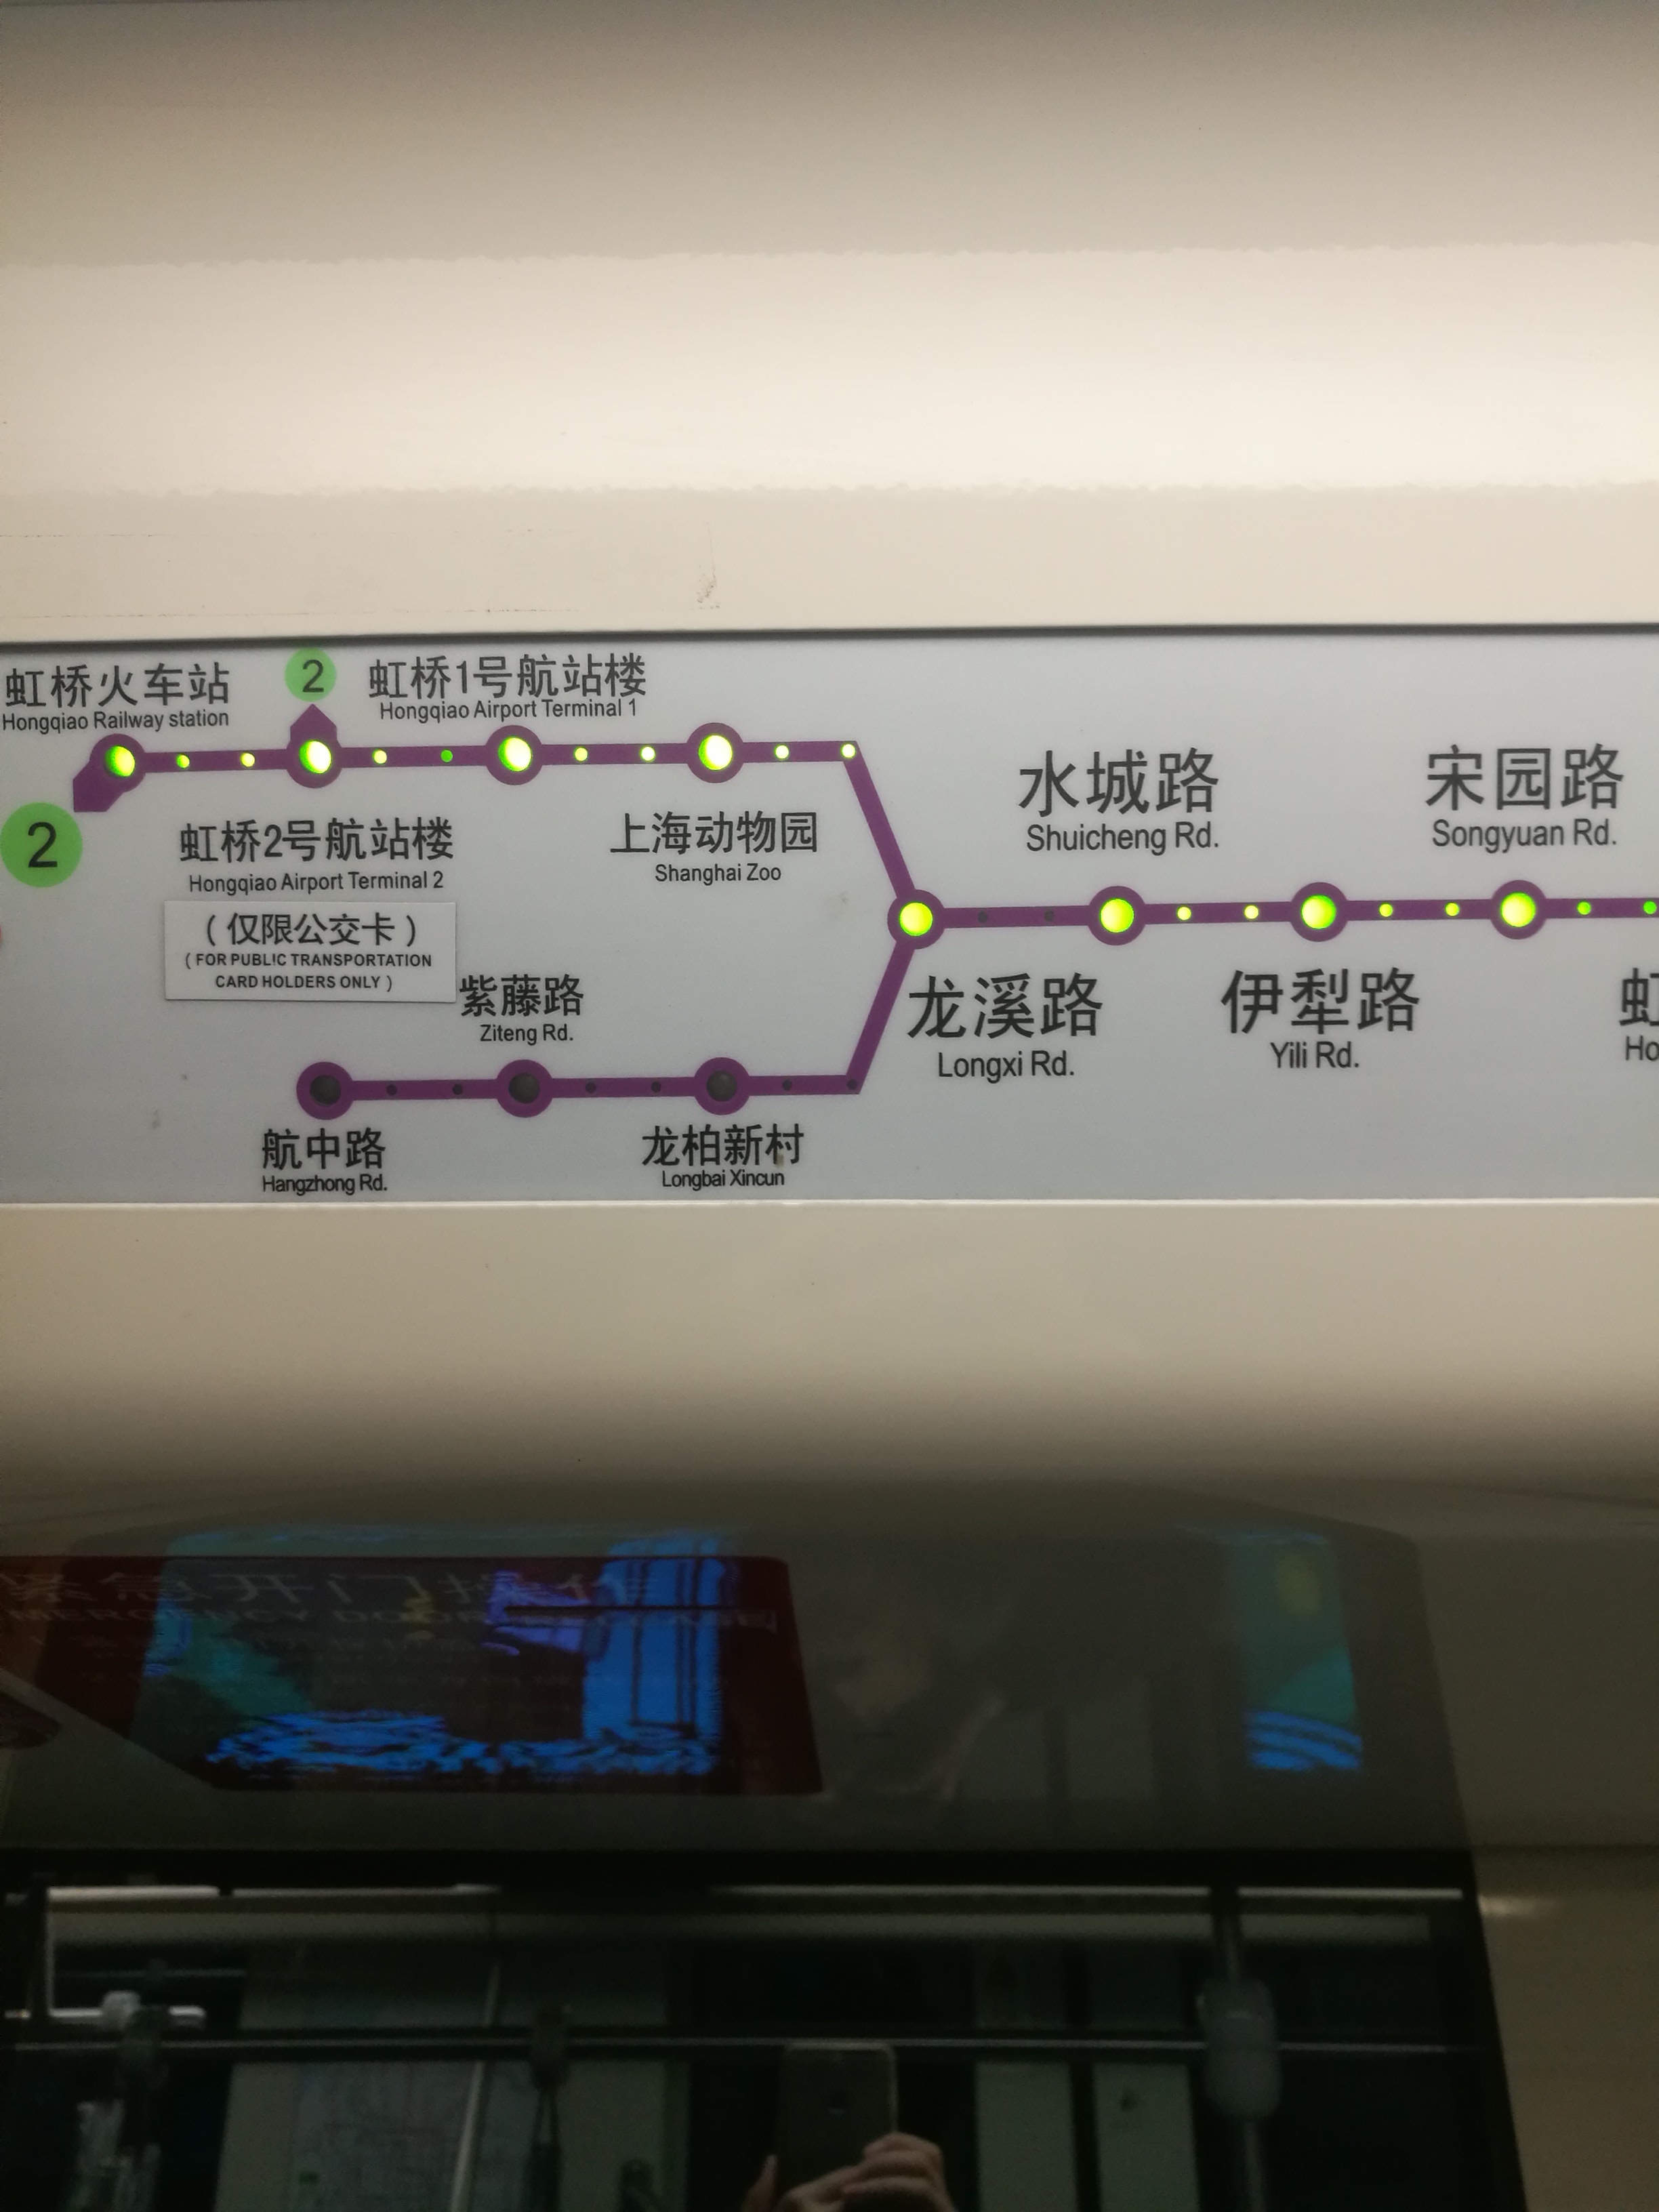 解析上海地铁10号线自己换乘自己问题:龙溪路站反向换乘麻烦